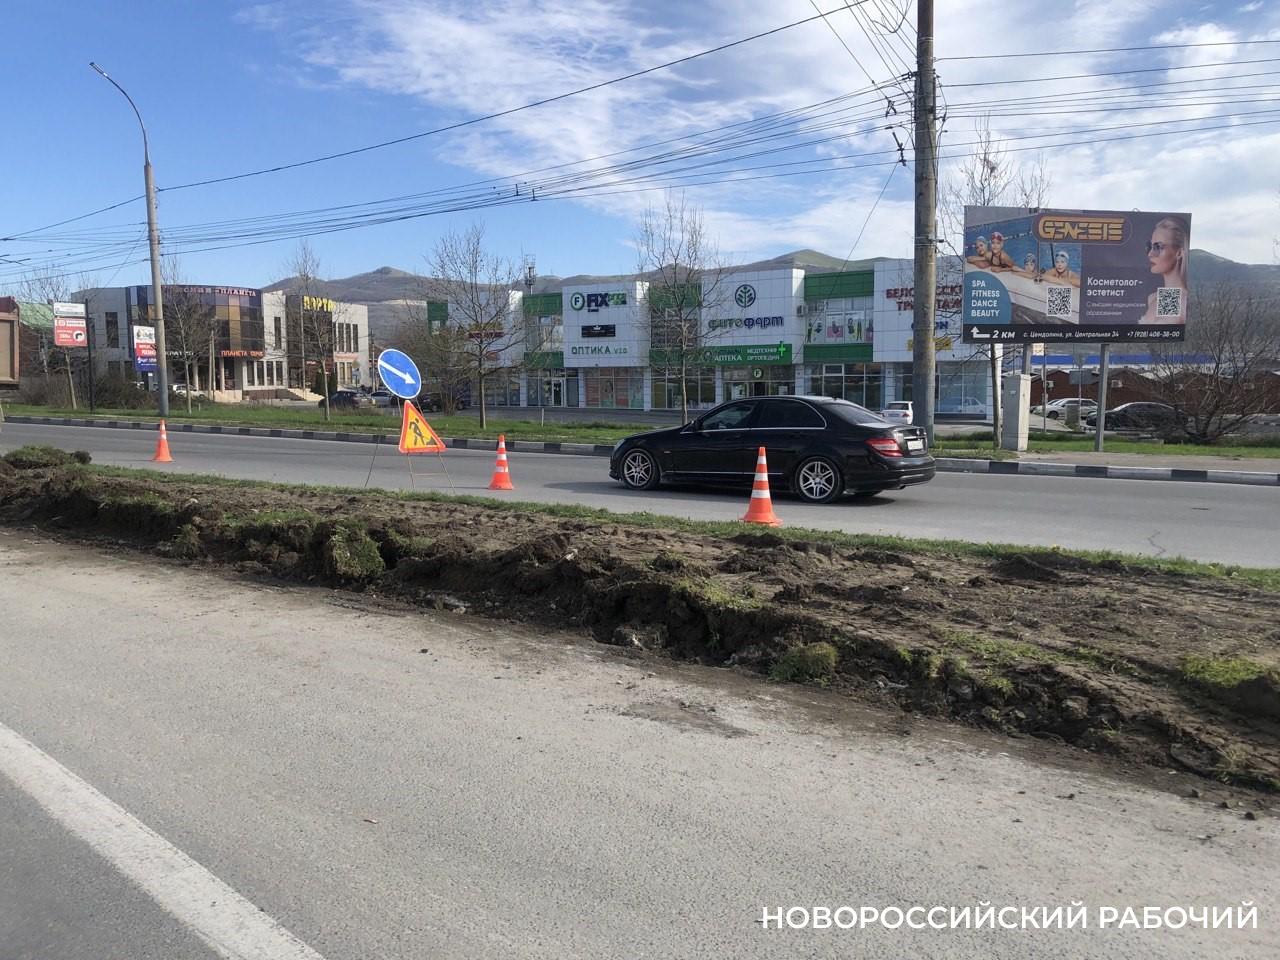 Началось?! В Новороссийске вот-вот стартует реконструкция развязки в районе «Лукойла»